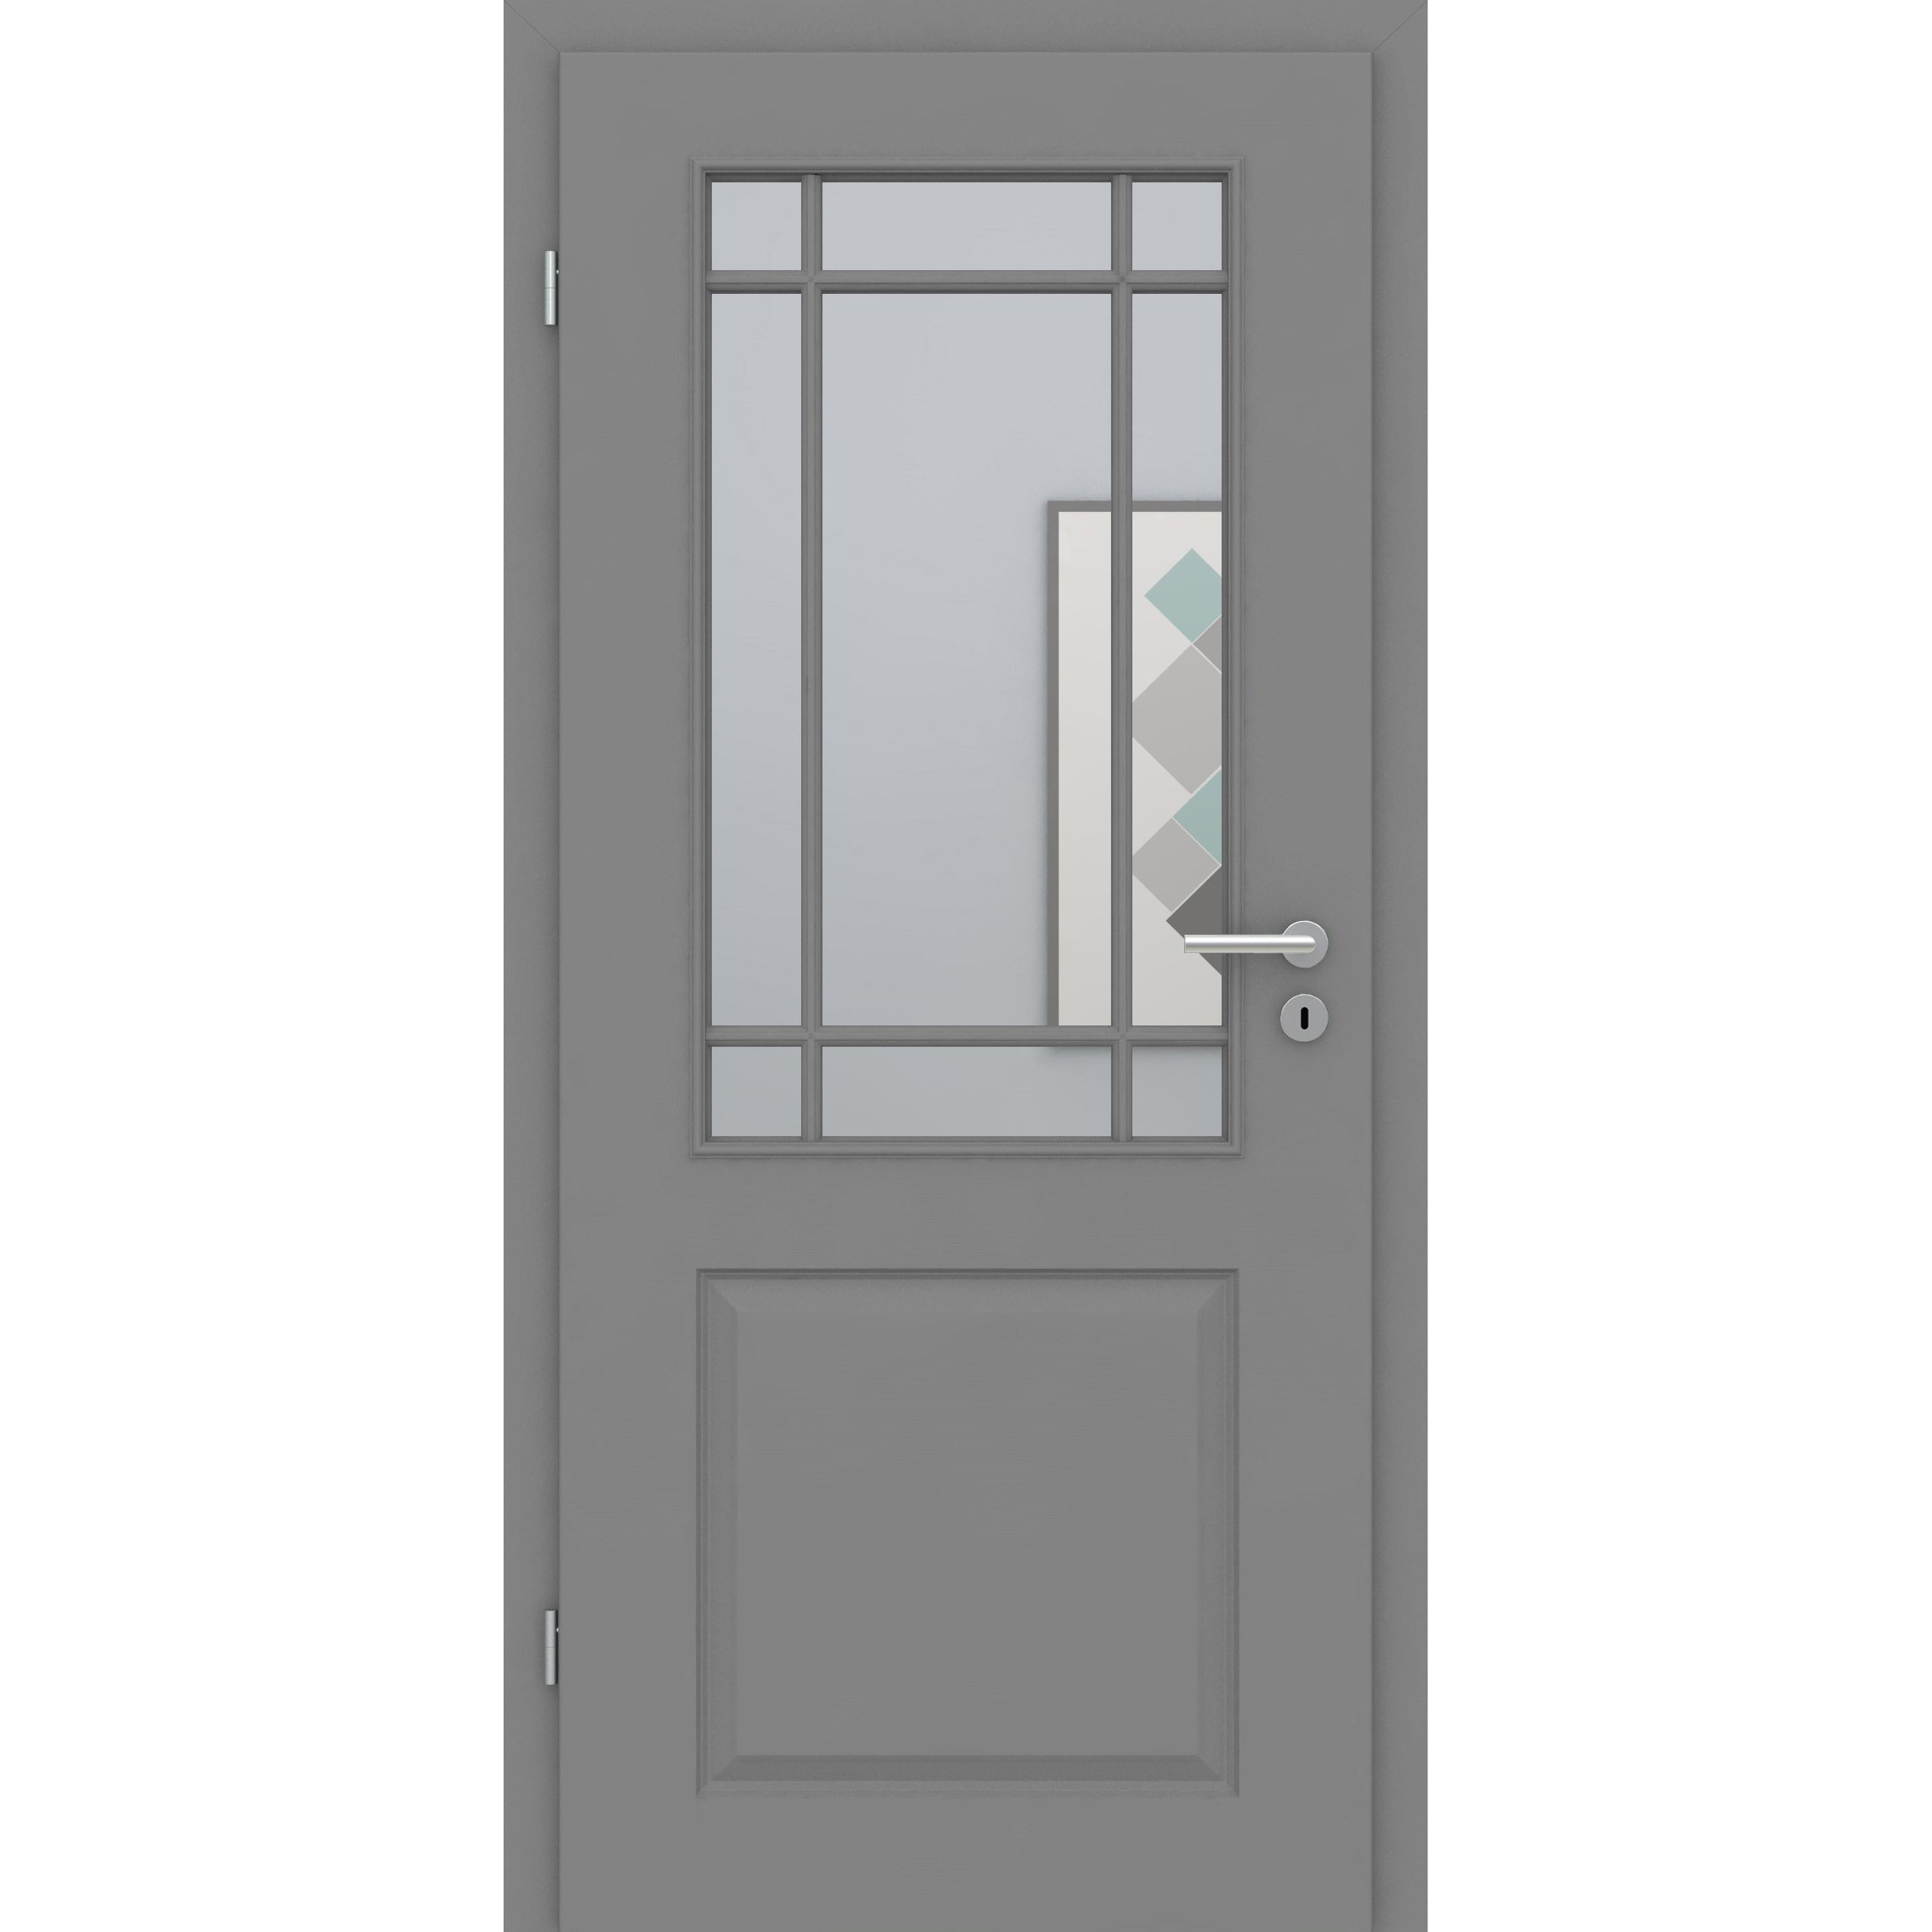 Zimmertür mit Lichtausschnitt mit Sprossenrahmen klassisch grau 2 Kassetten Designkante - Modell Stiltür K27LASPK